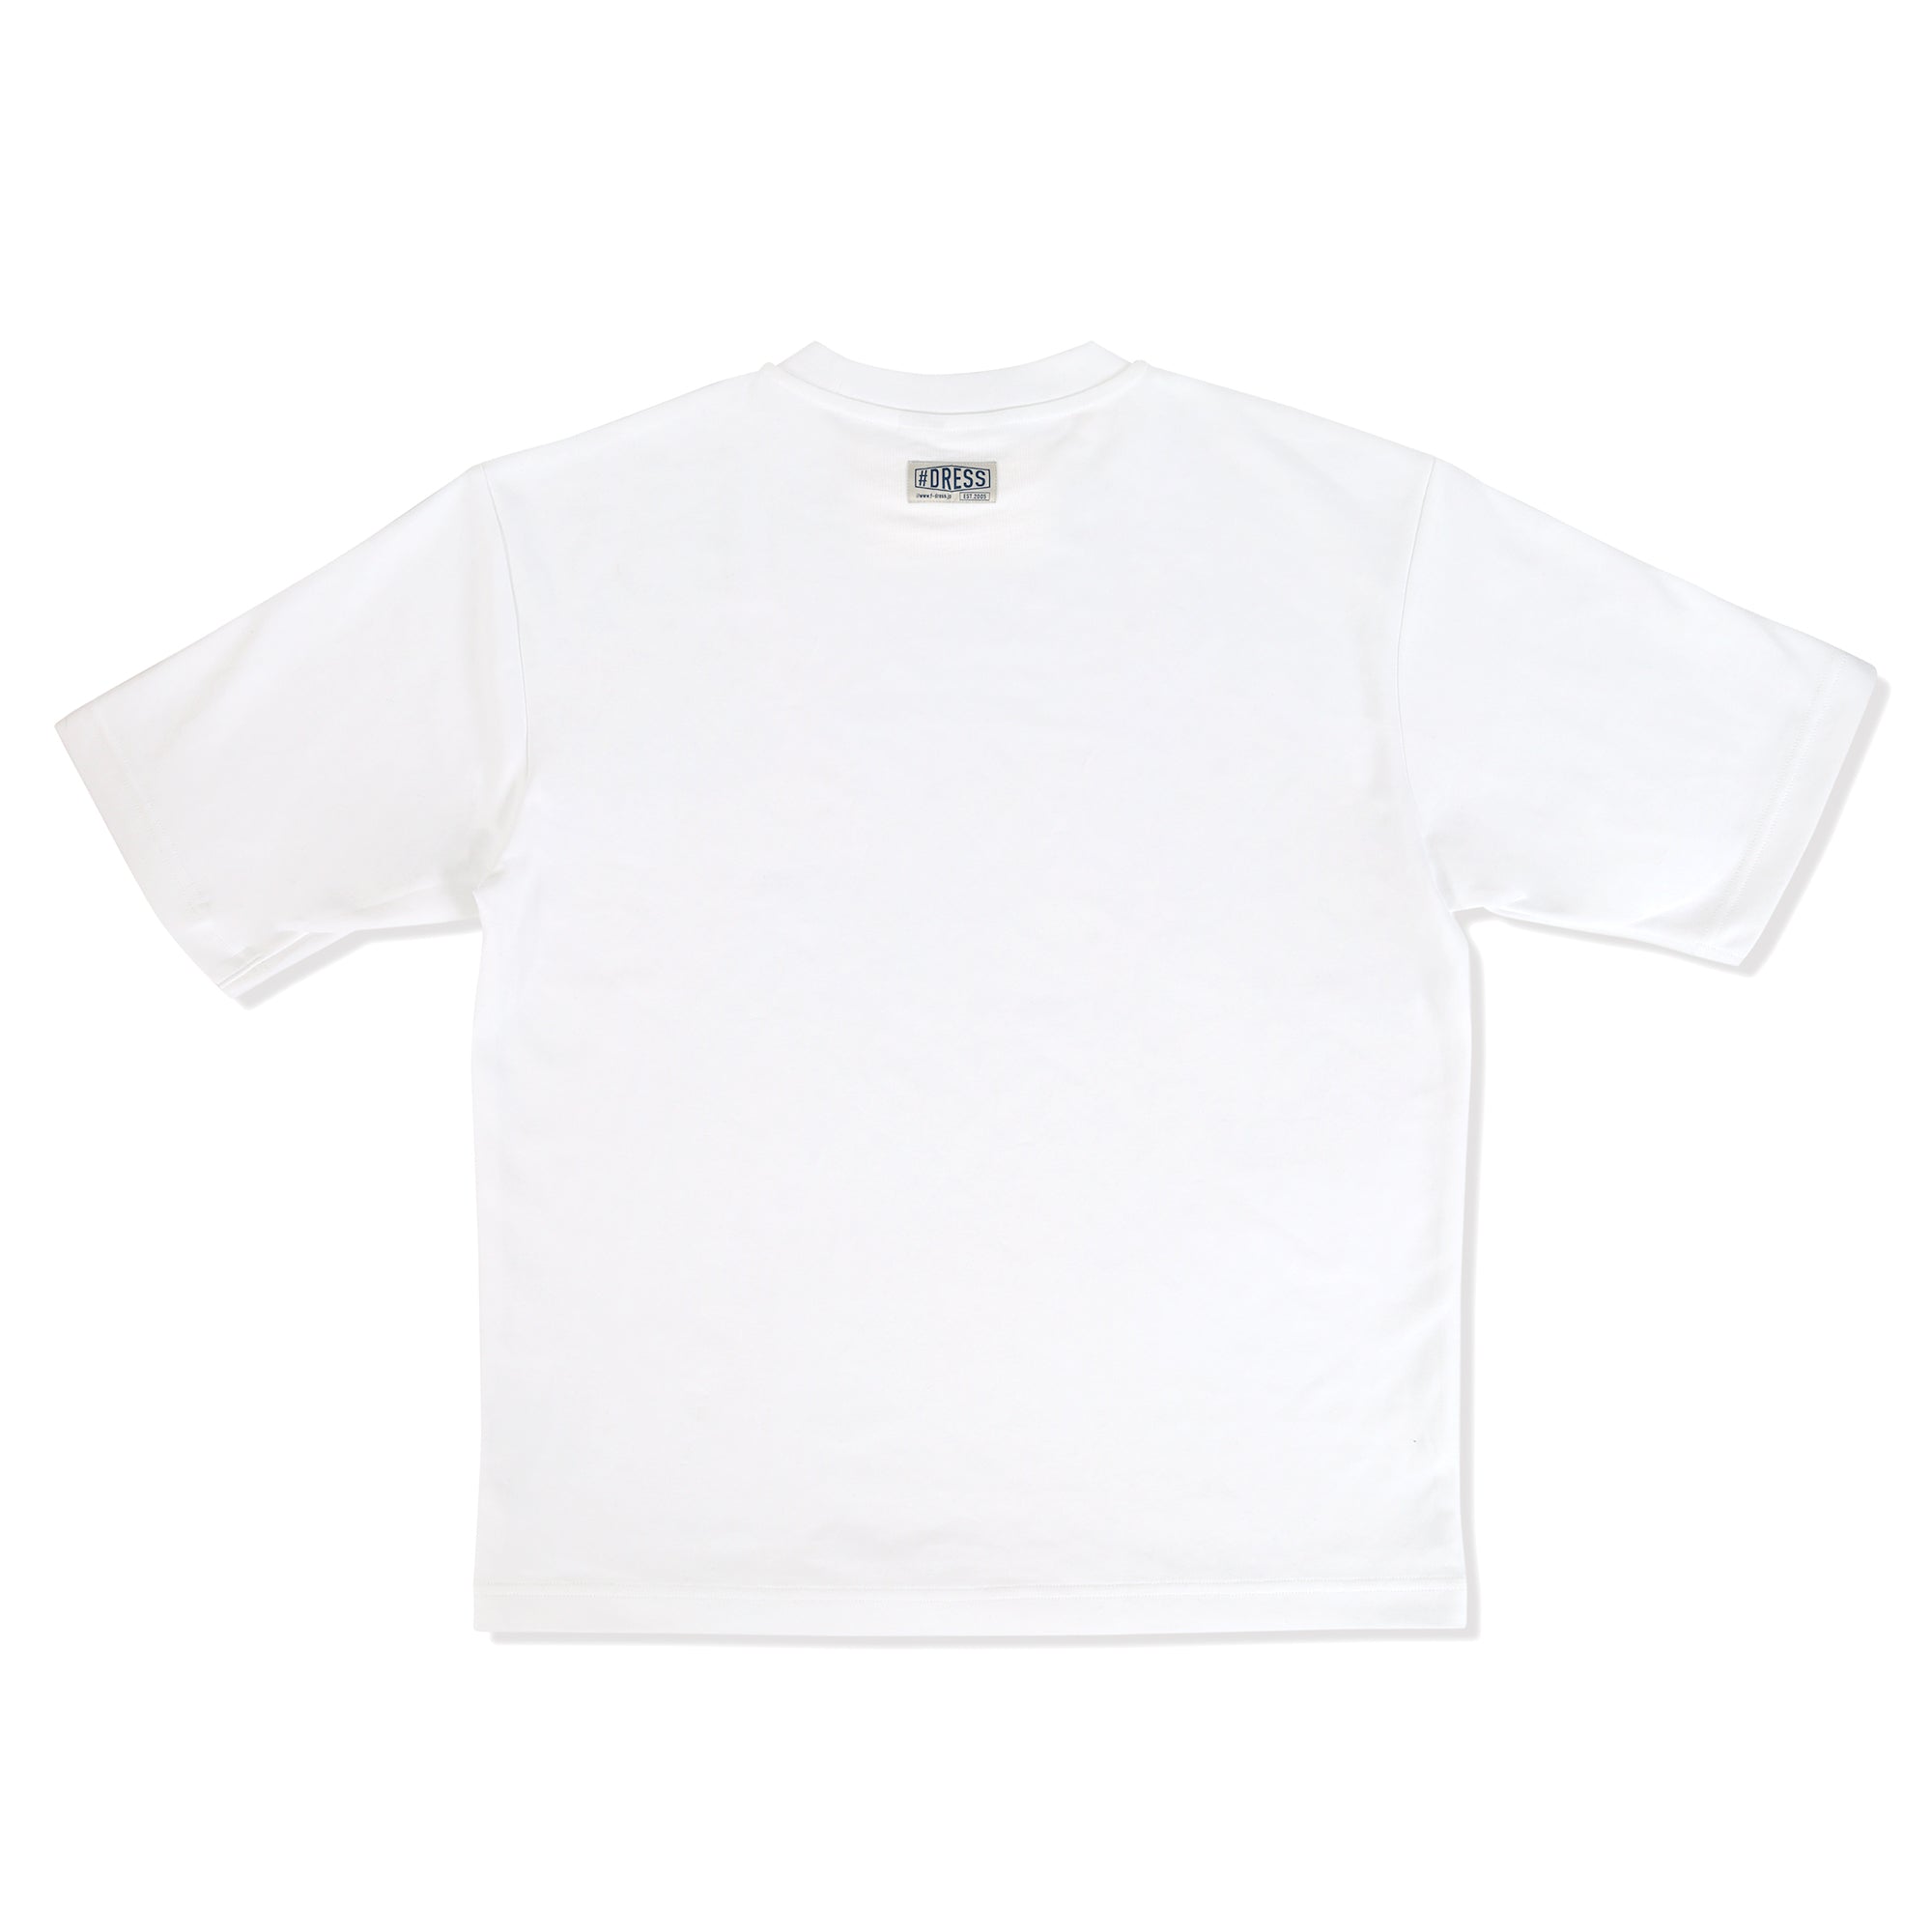 DRESS オーバーサイズ Tシャツ【ホワイト】